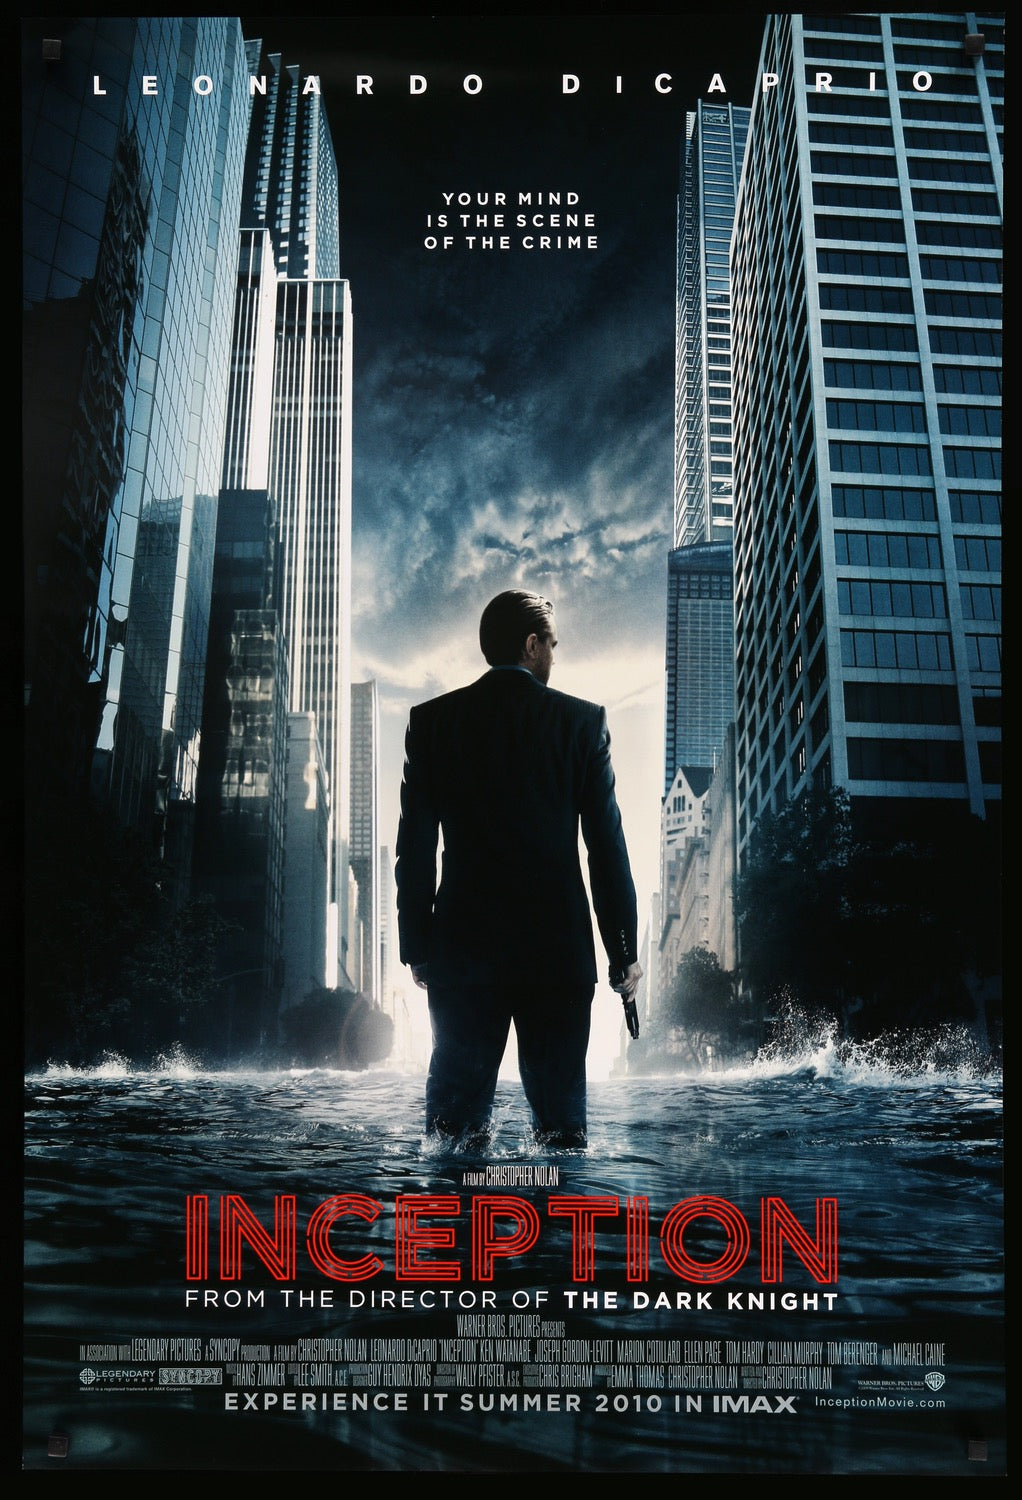 Inception (2010) original movie poster for sale at Original Film Art